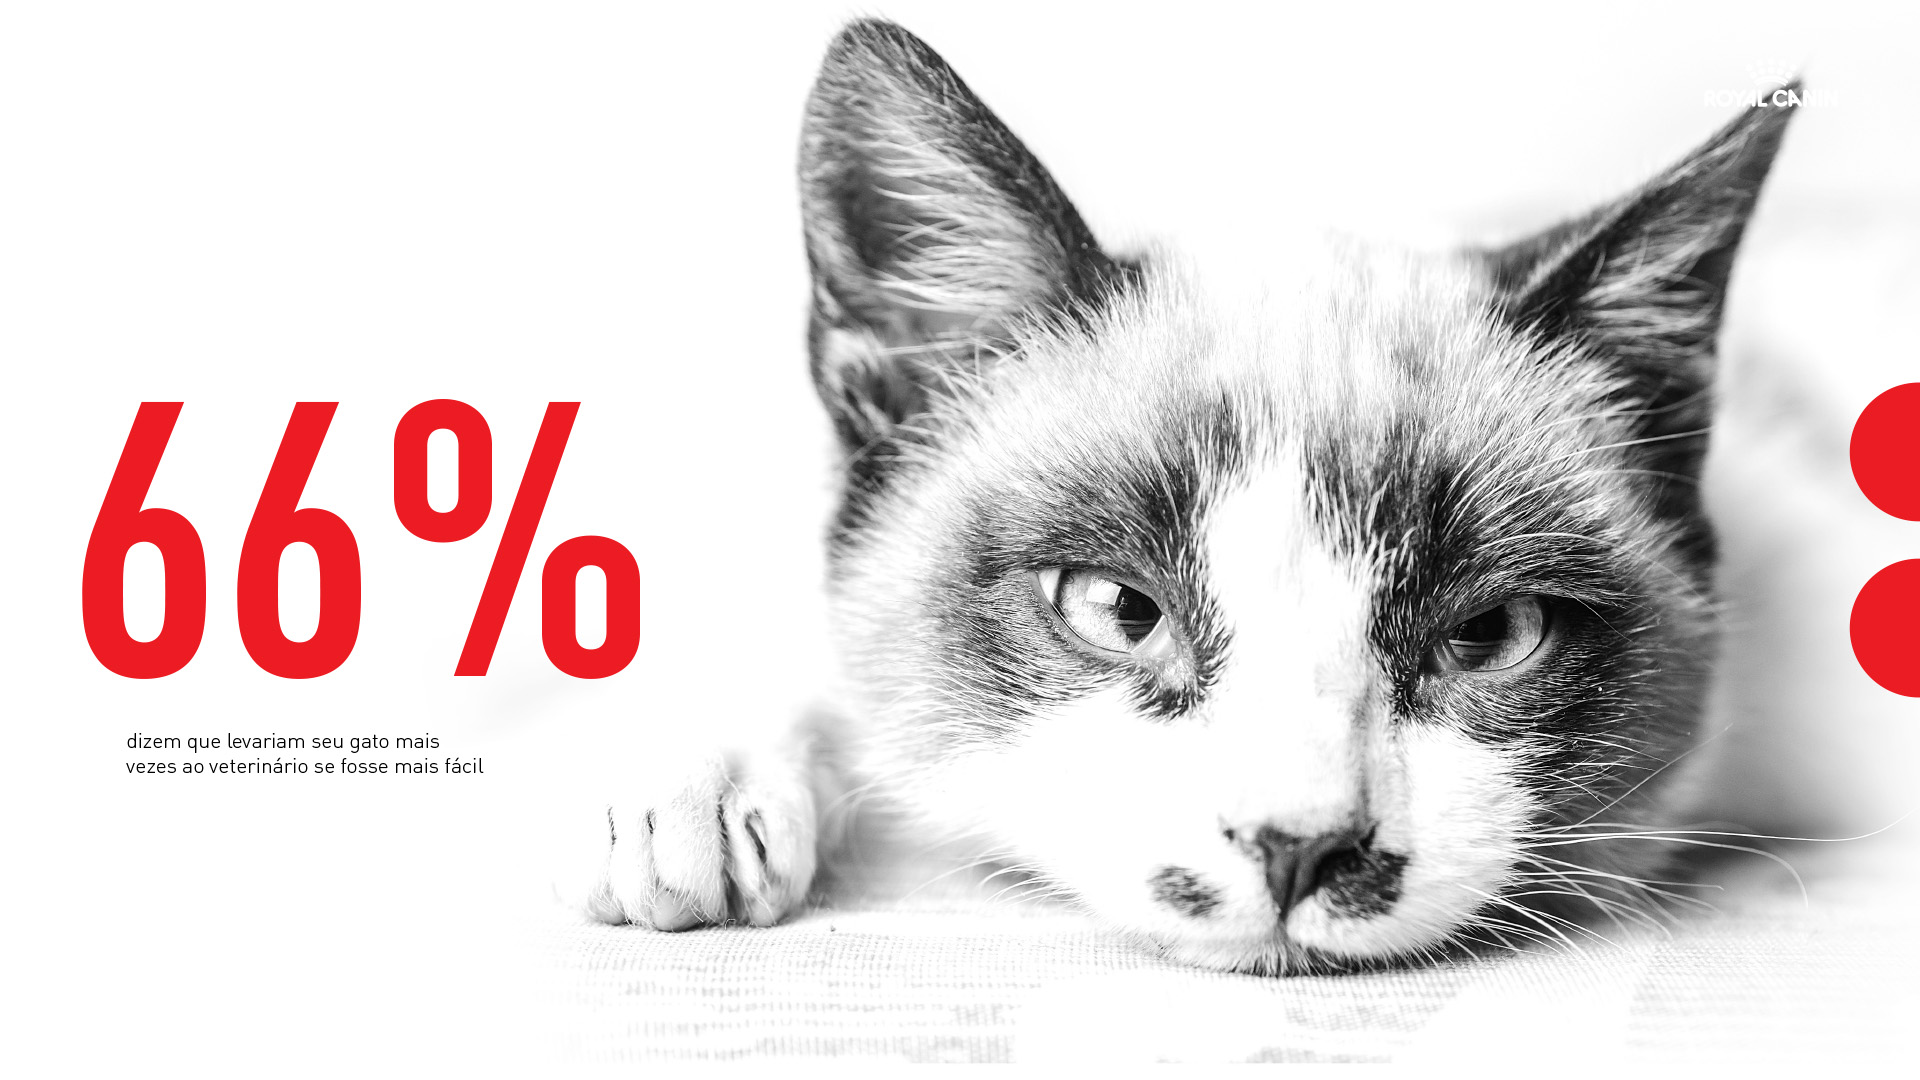 Imagem com gato e dados sobre visitas de gatos ao veterinário. Conceito Royal Canin.